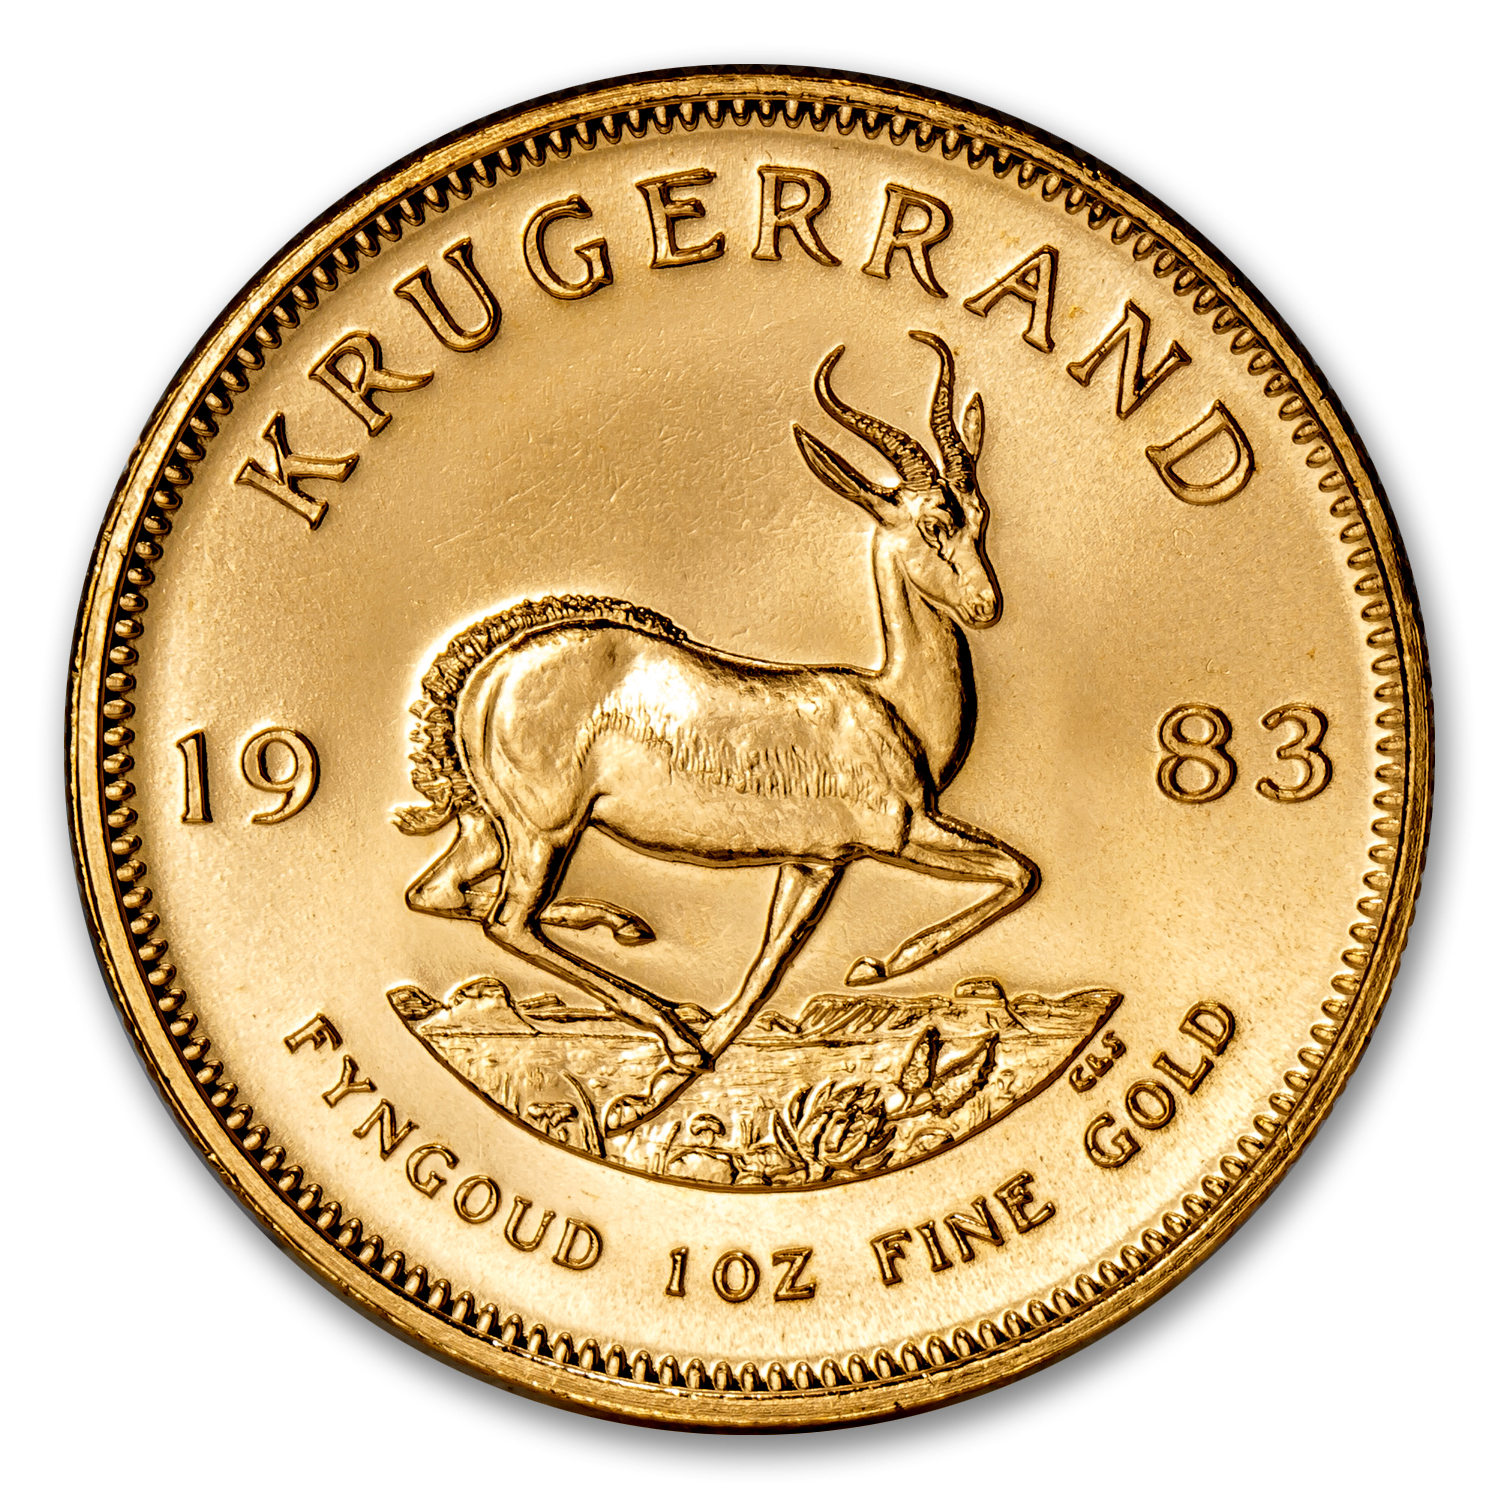 Buy 1983 South Africa 1 oz Gold Krugerrand BU